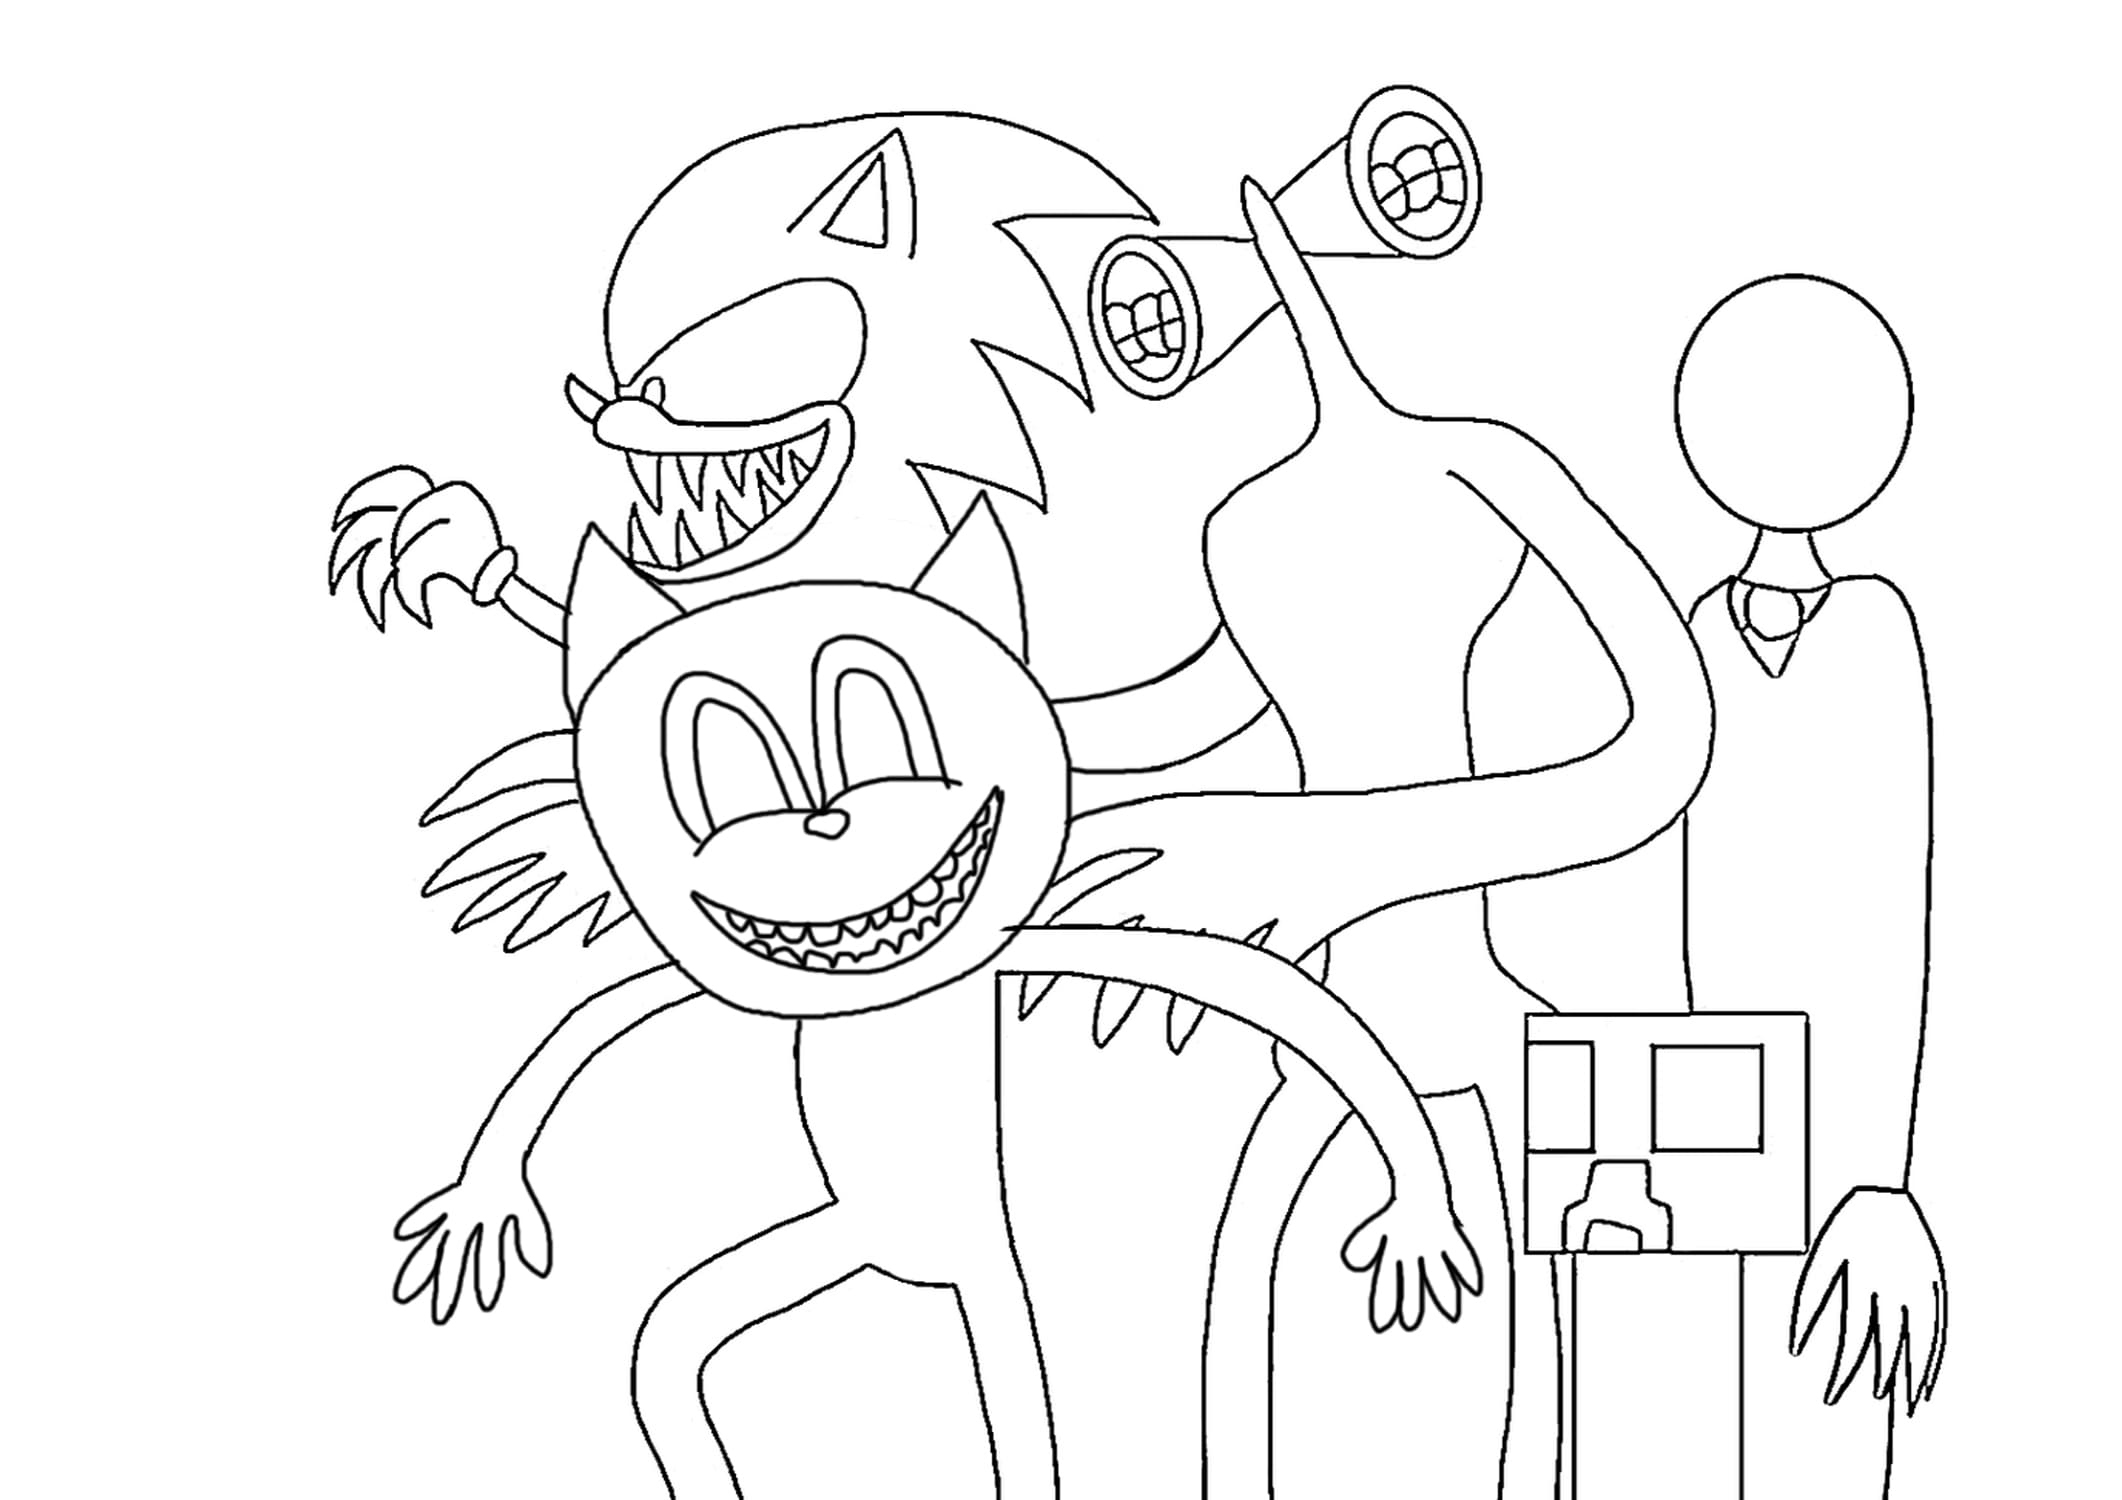 Ausmalbild Cartoon Cat , Siren Head, Sonic, Creeper und Slenderman sind die Hauptmonster